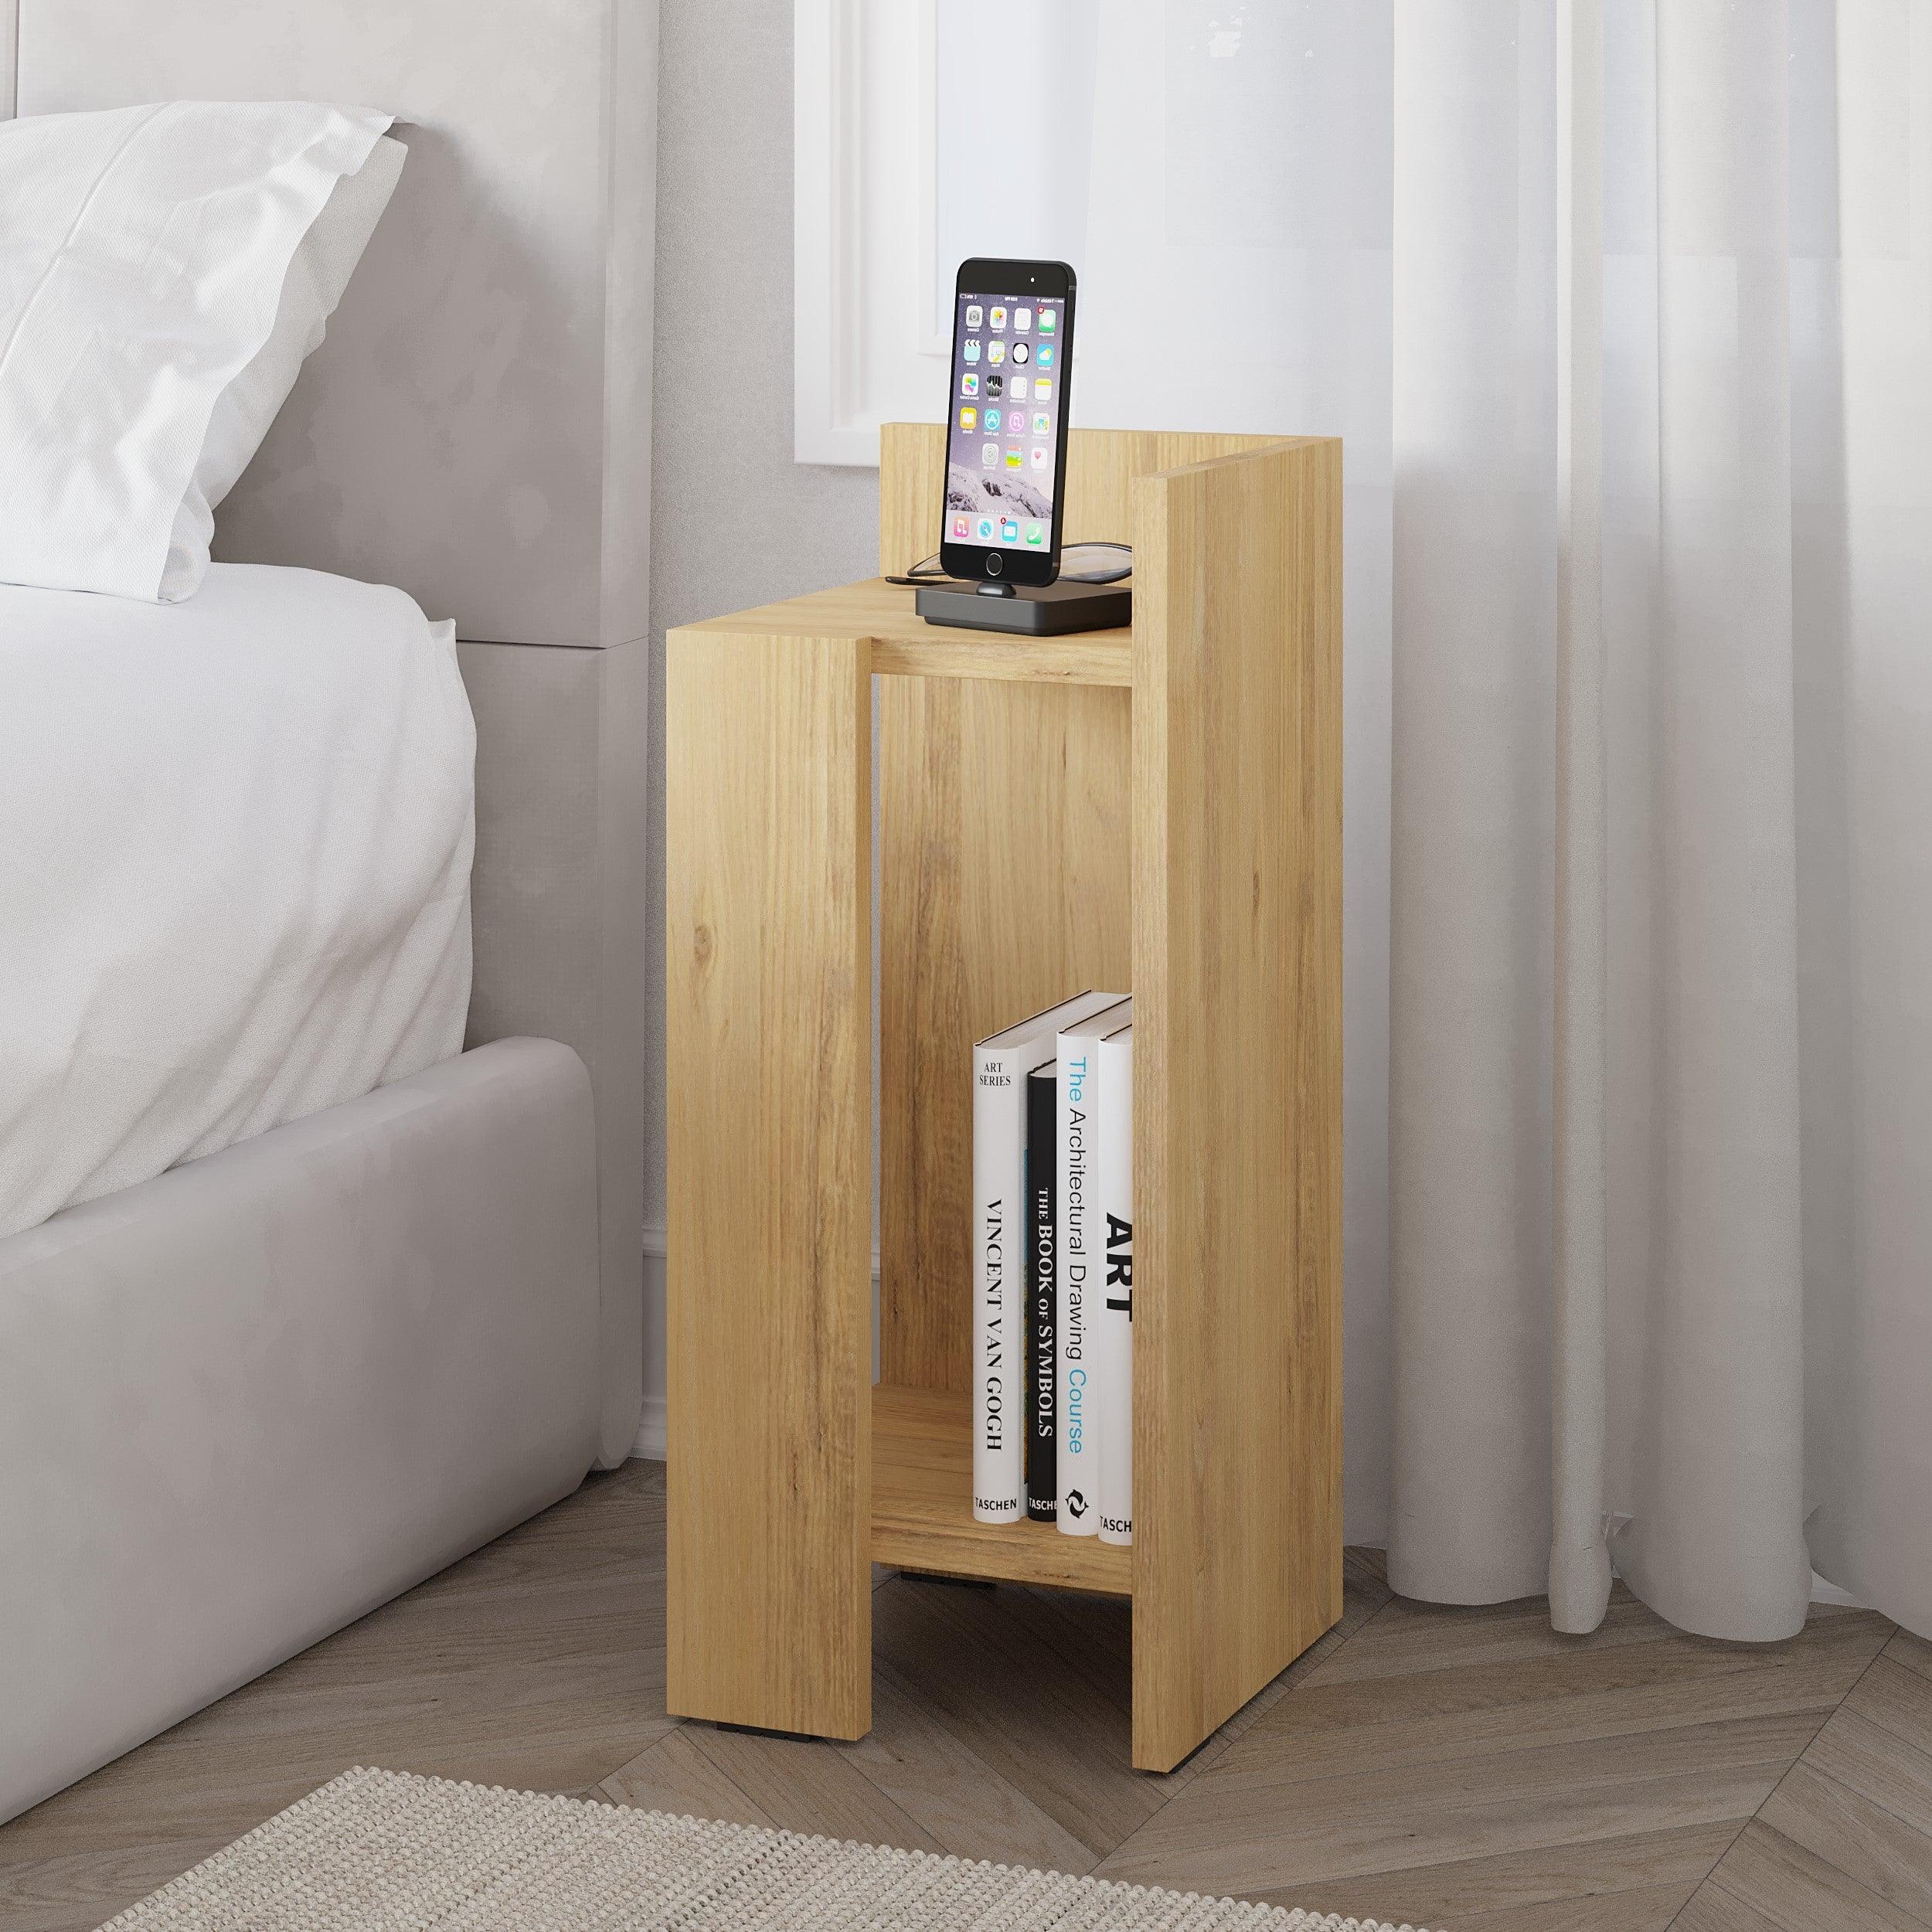 Elos Modern Bedside Table Right Module 25cm Narrow - Decortie